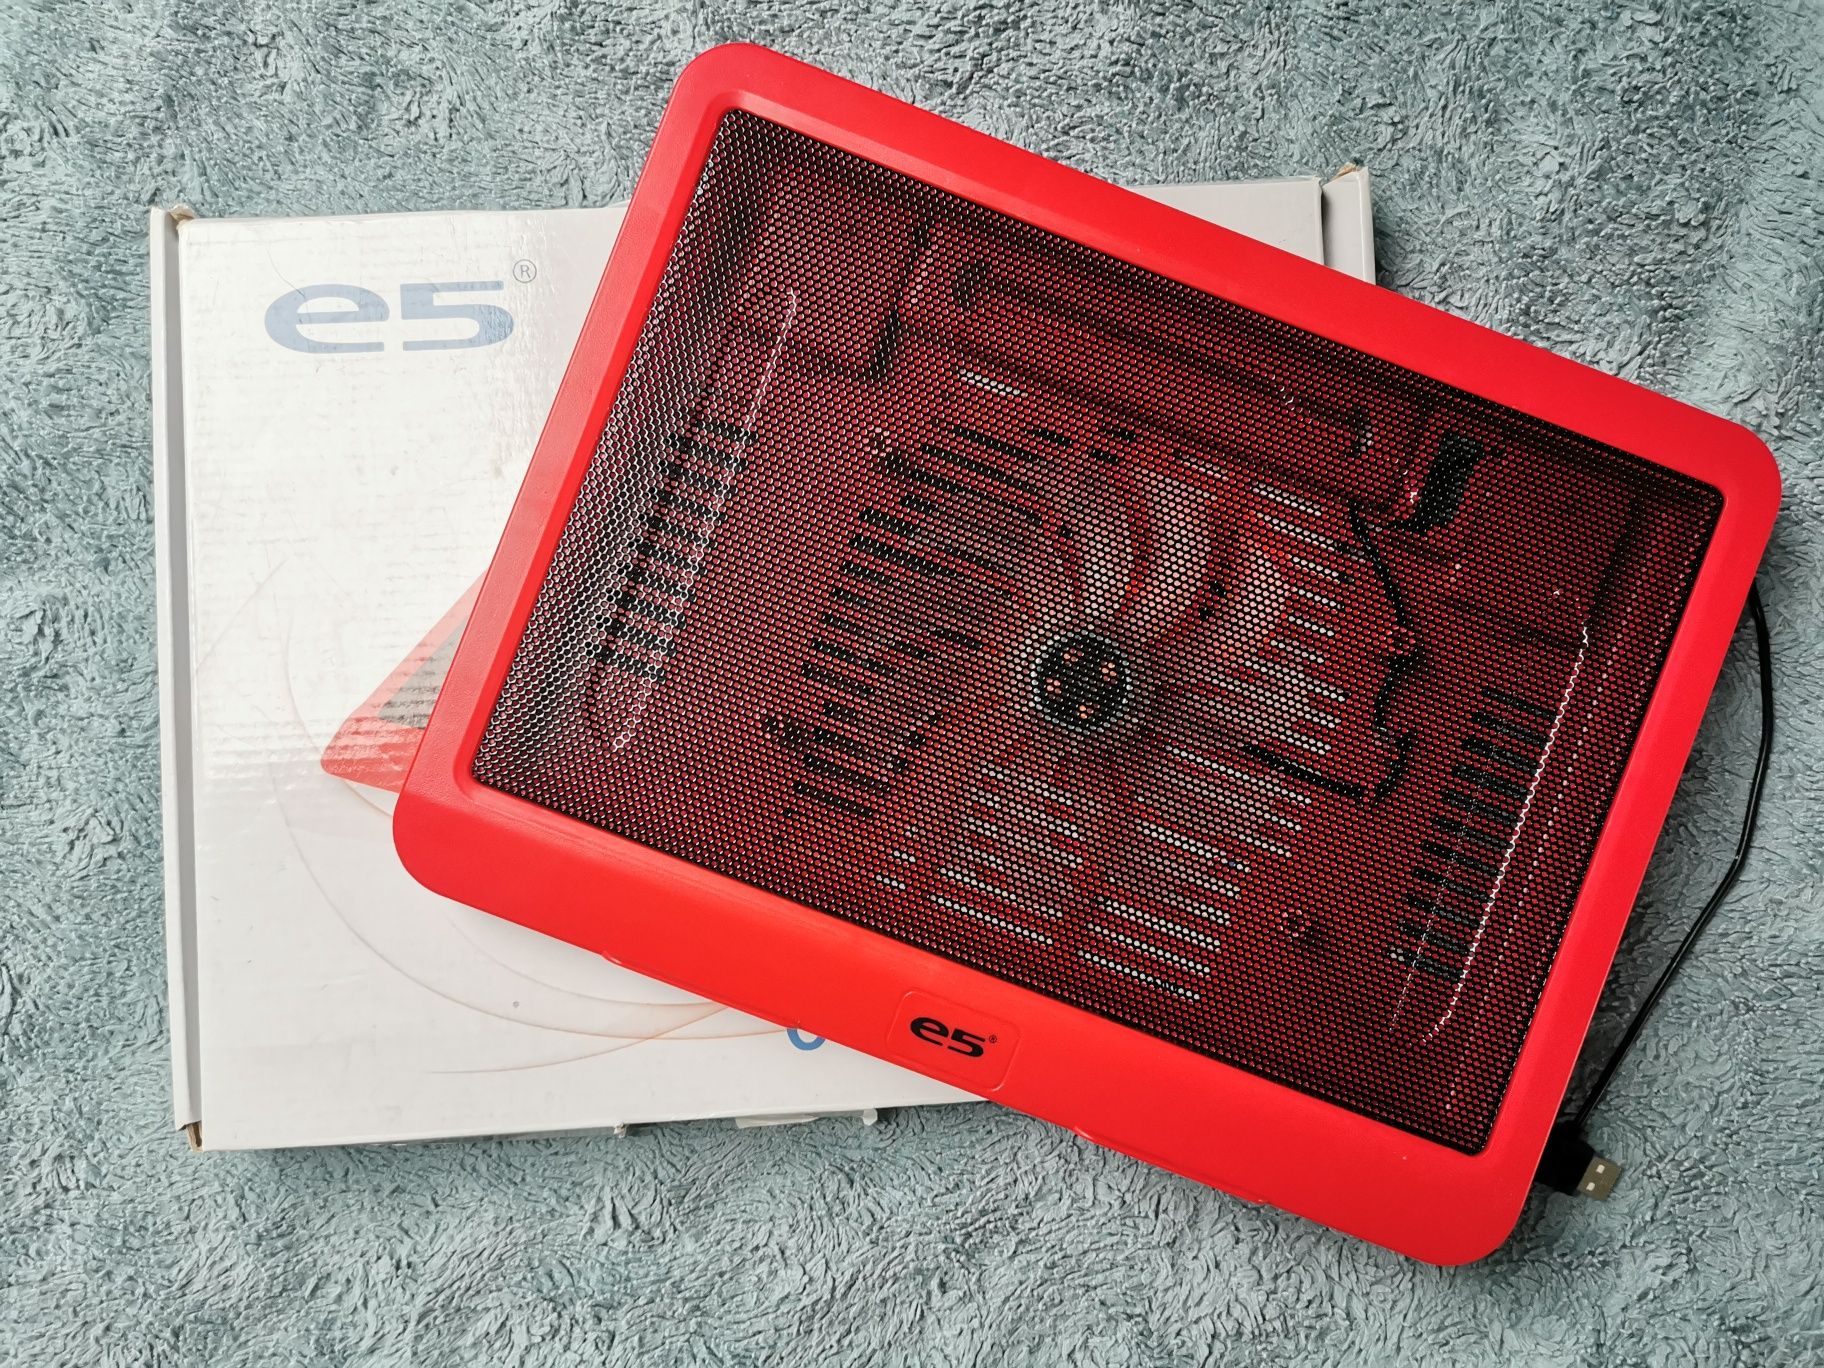 Podstawka chłodząca E5 Coolpad czerwona